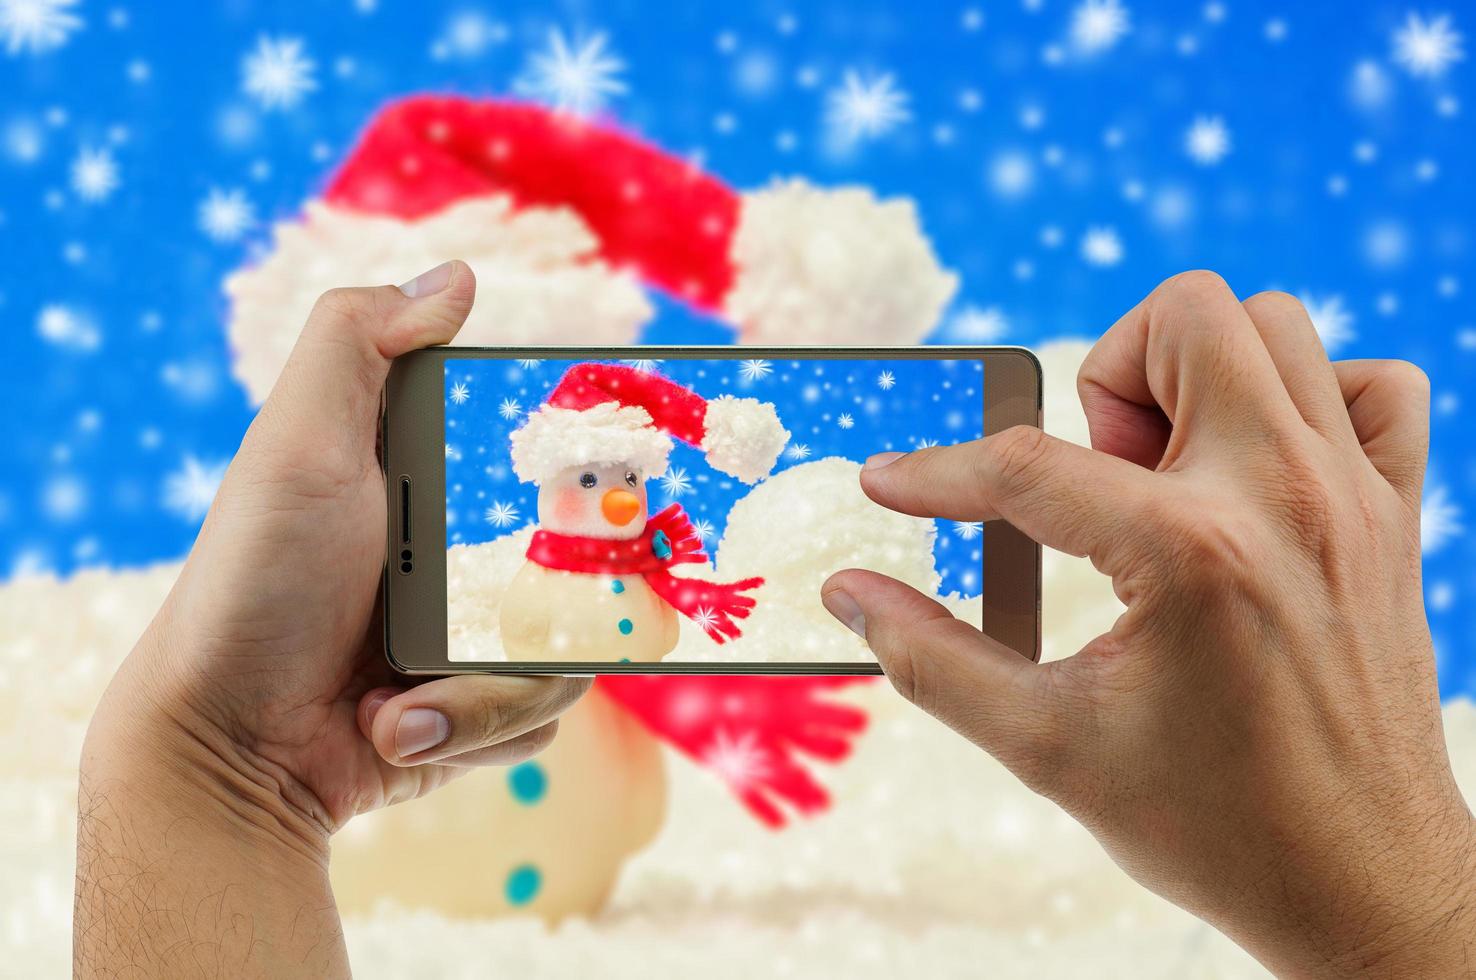 man die mobiele telefoon gebruikt om zoomfoto van sneeuwpop met onscherpe achtergrond te bekijken. kerstmis vieren gelukkig nieuwjaar festival foto